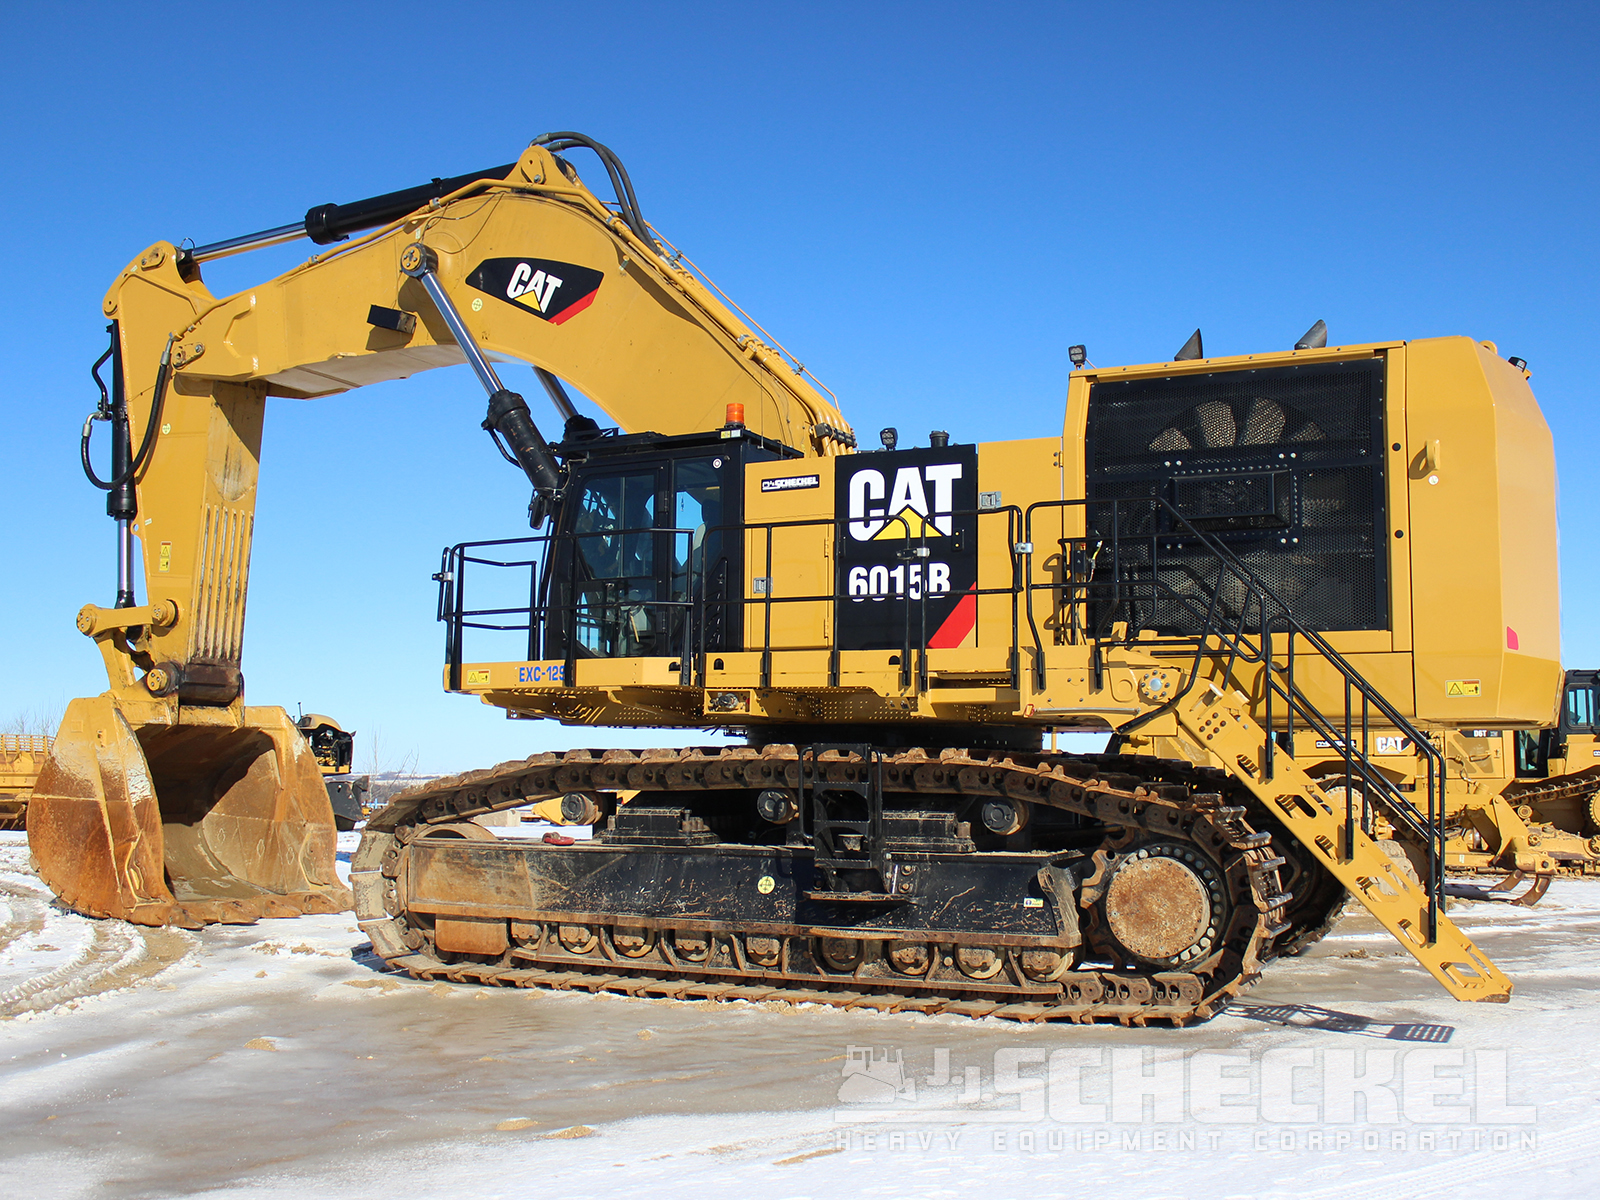 2021 Cat 6015B, Excavator